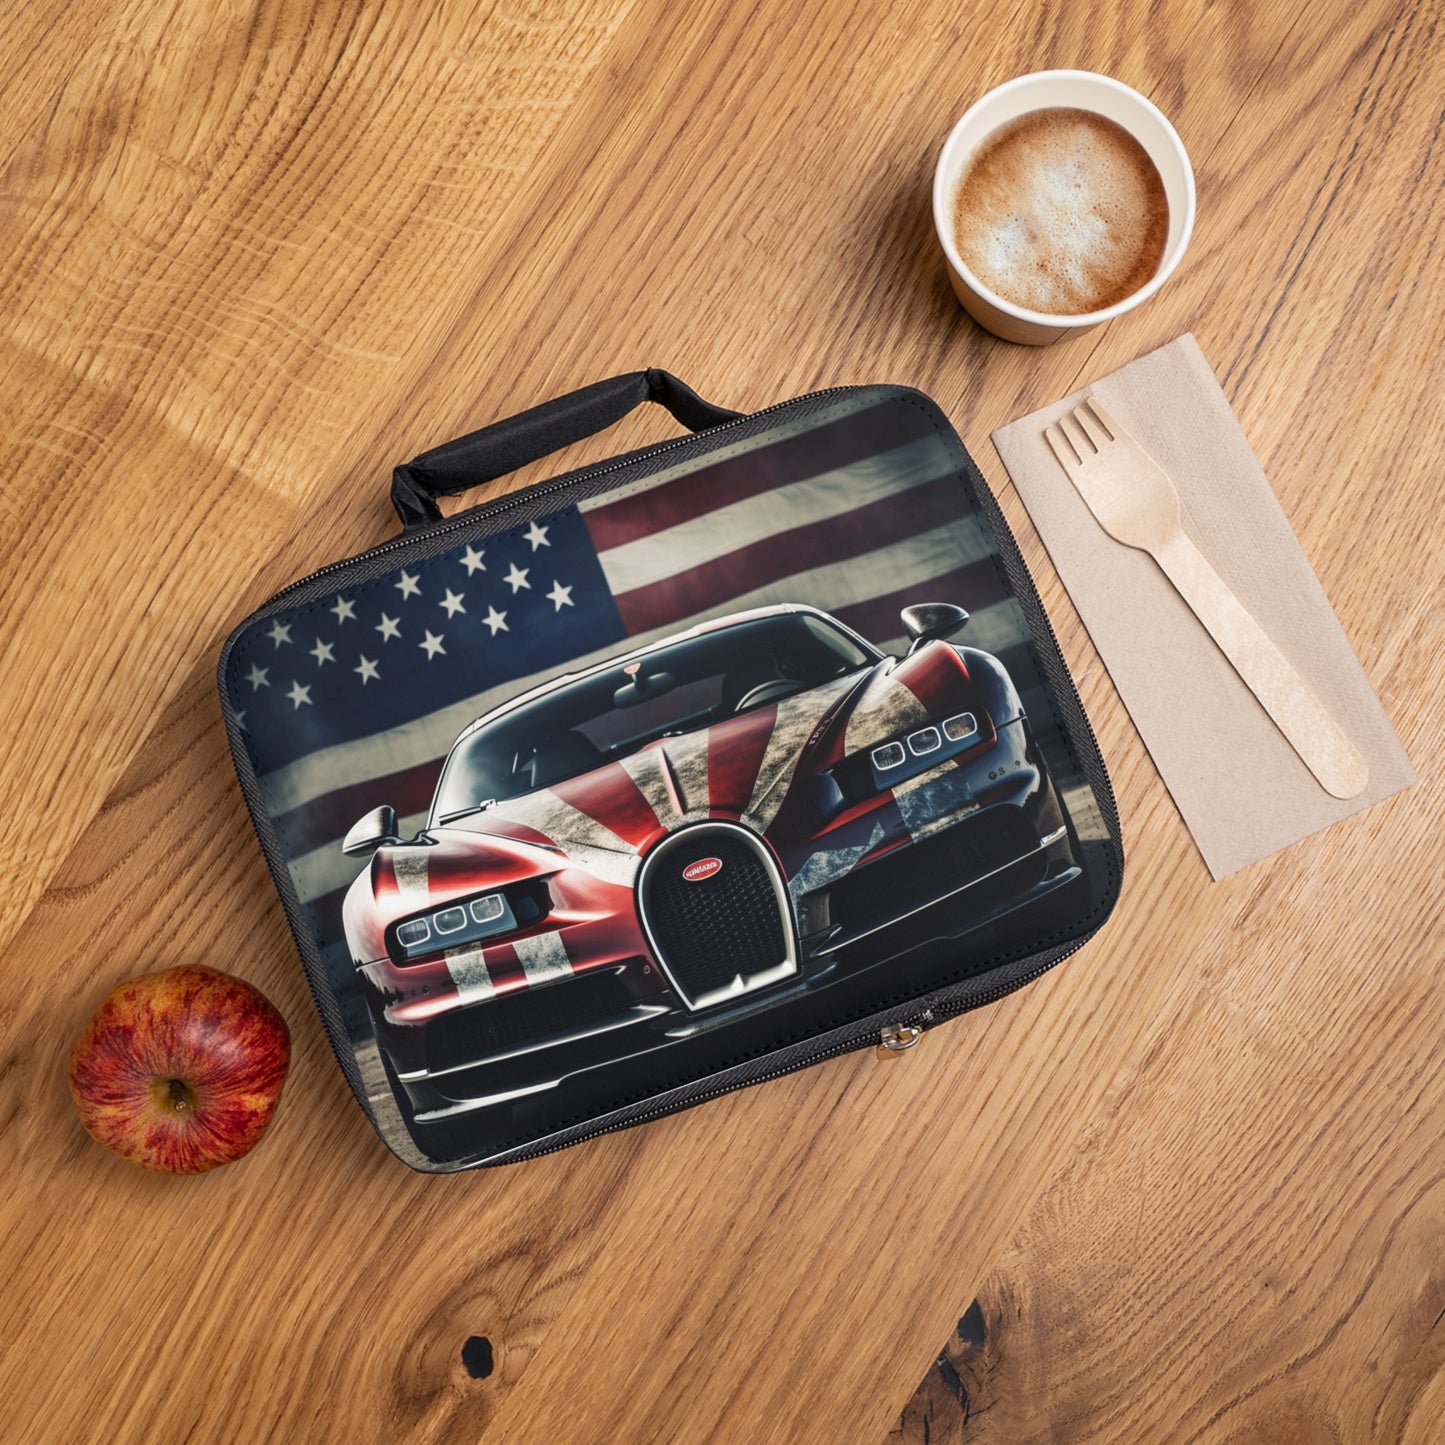 Lunch Bag American Flag Background Bugatti 3